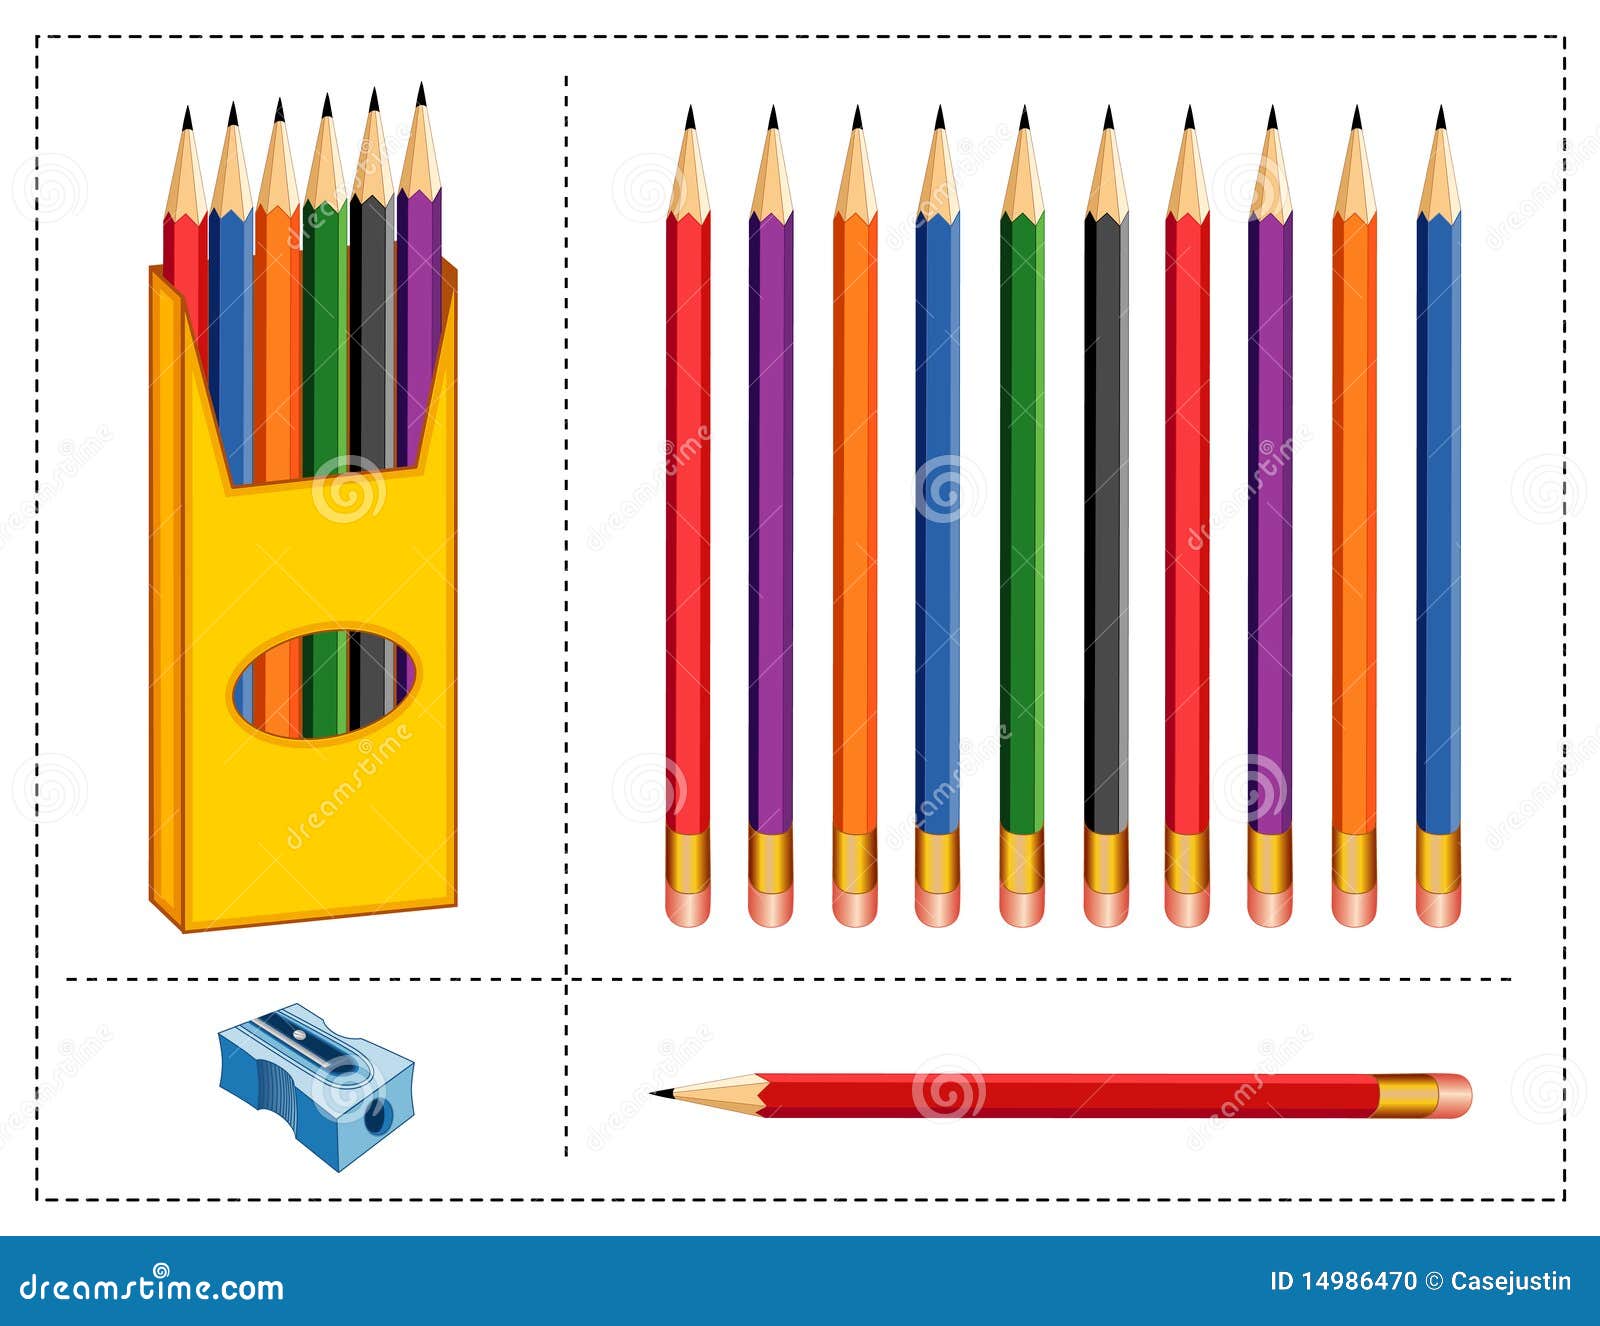 Коробка цветных карандашей. Коробки с карандашами. Большая коробка для карандашей. Коробка с карандашами на прозрачном фоне.